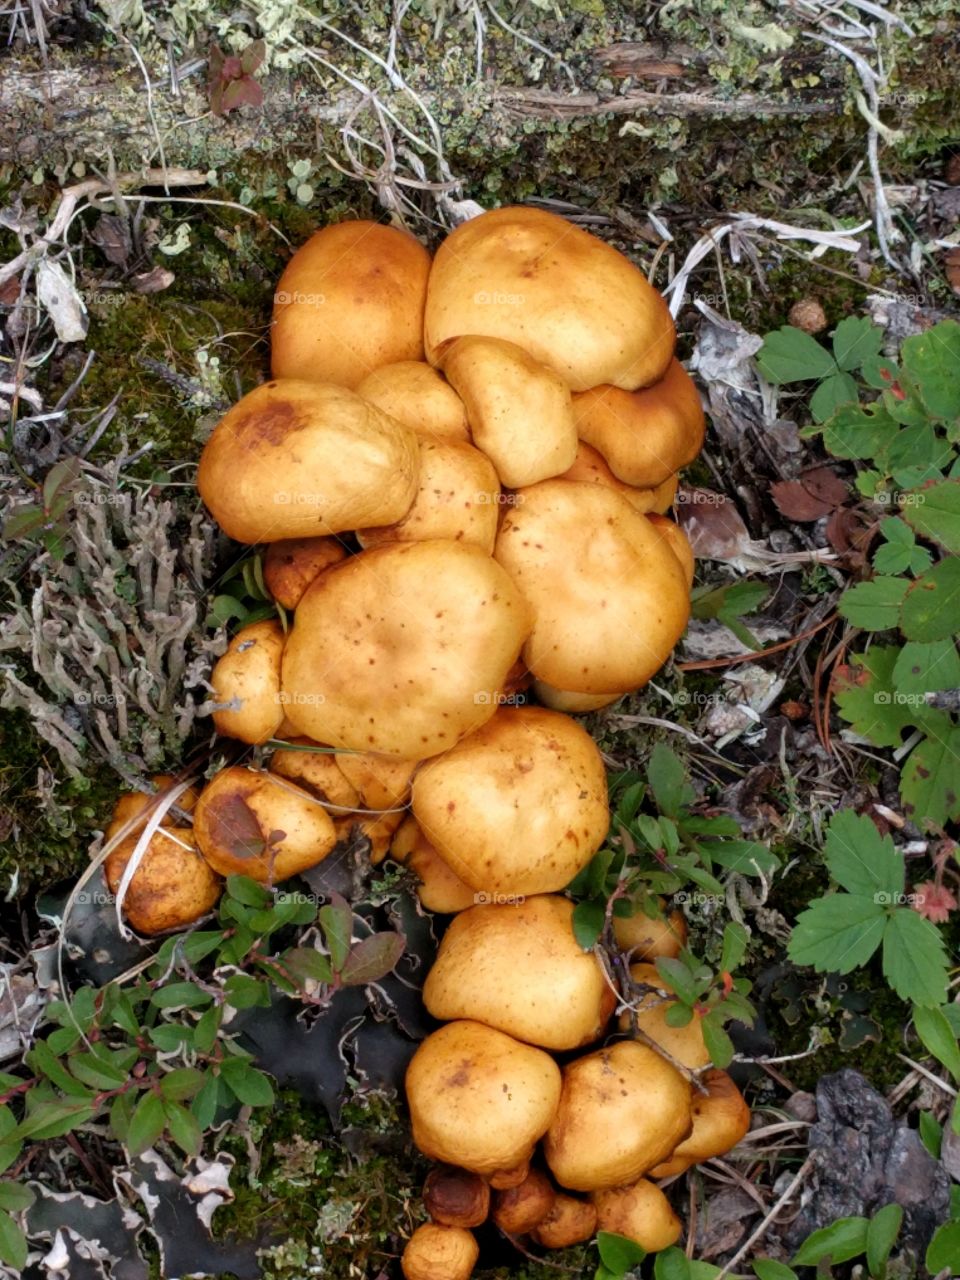 clump of mushrooms